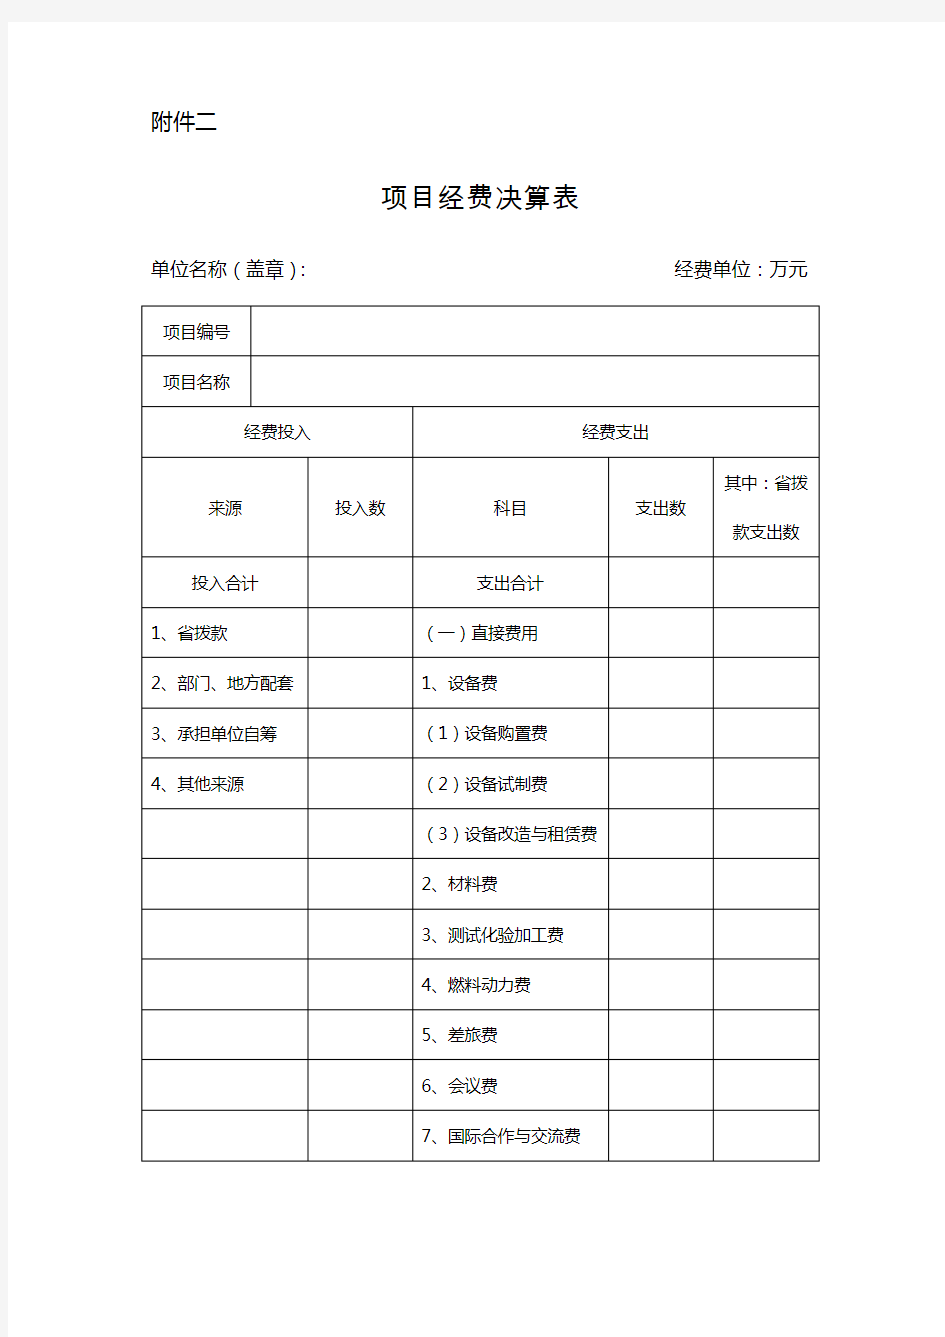 江苏省科技计划项目经费决算表